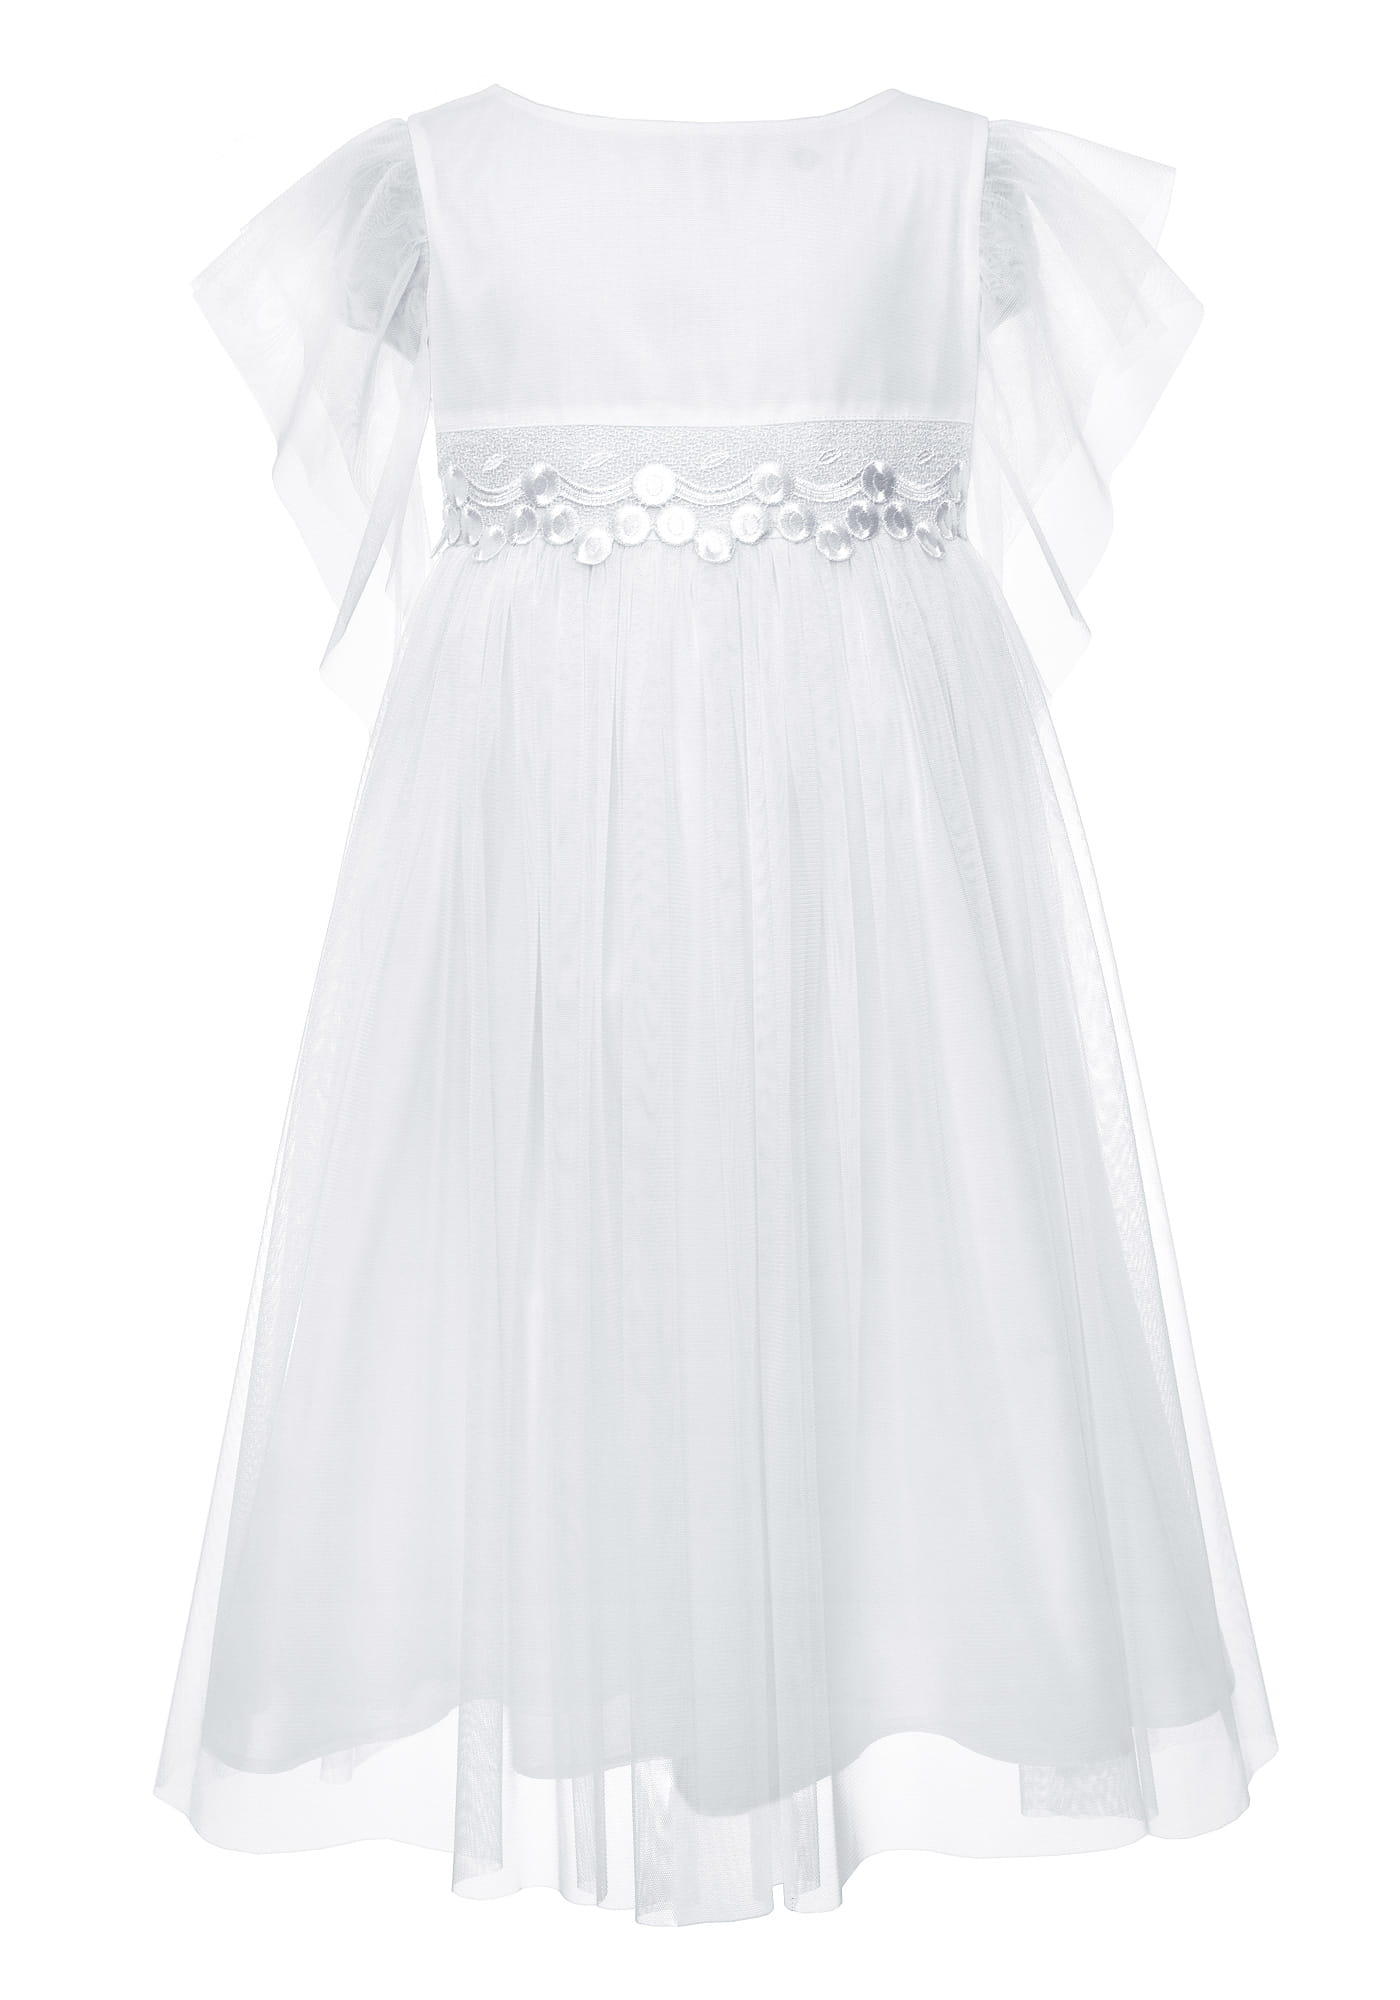 dievčenské šaty s čipkou v páse na 1. sv. prijímanie biele